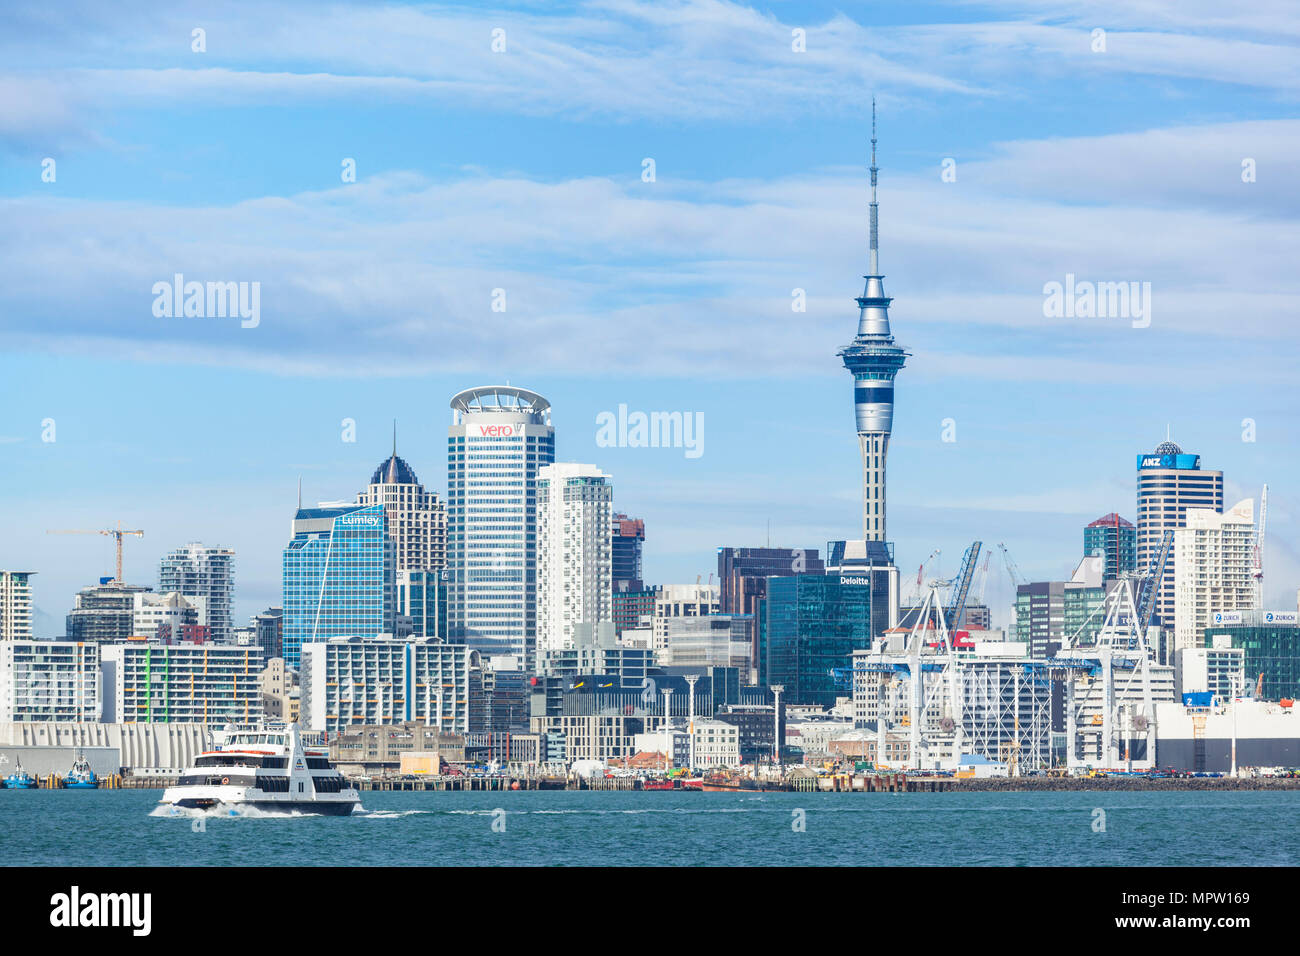 Nuova Zelanda Auckland Nuova Zelanda Isola del nord dello skyline di Auckland Waitemata Harbour con traghetto cbd Sky Tower e la zona del molo del lungomare Foto Stock